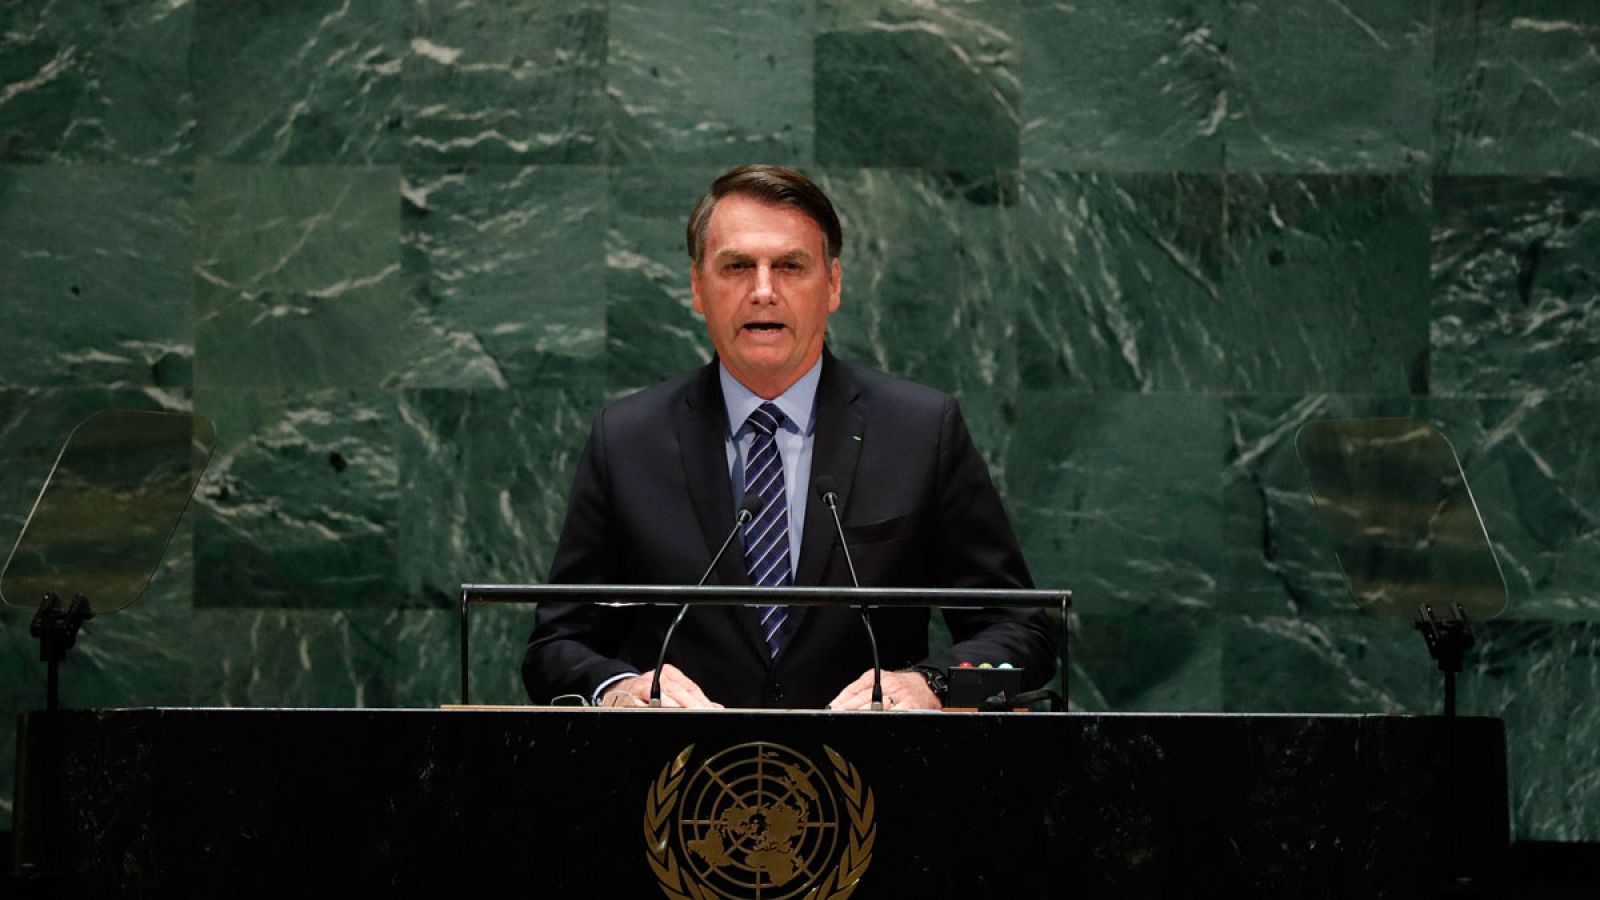 El presidente de Brasil, Jair Bolsonaro, durante su intervención en el 74° periodo de sesiones de la Asamblea General de la ONU.